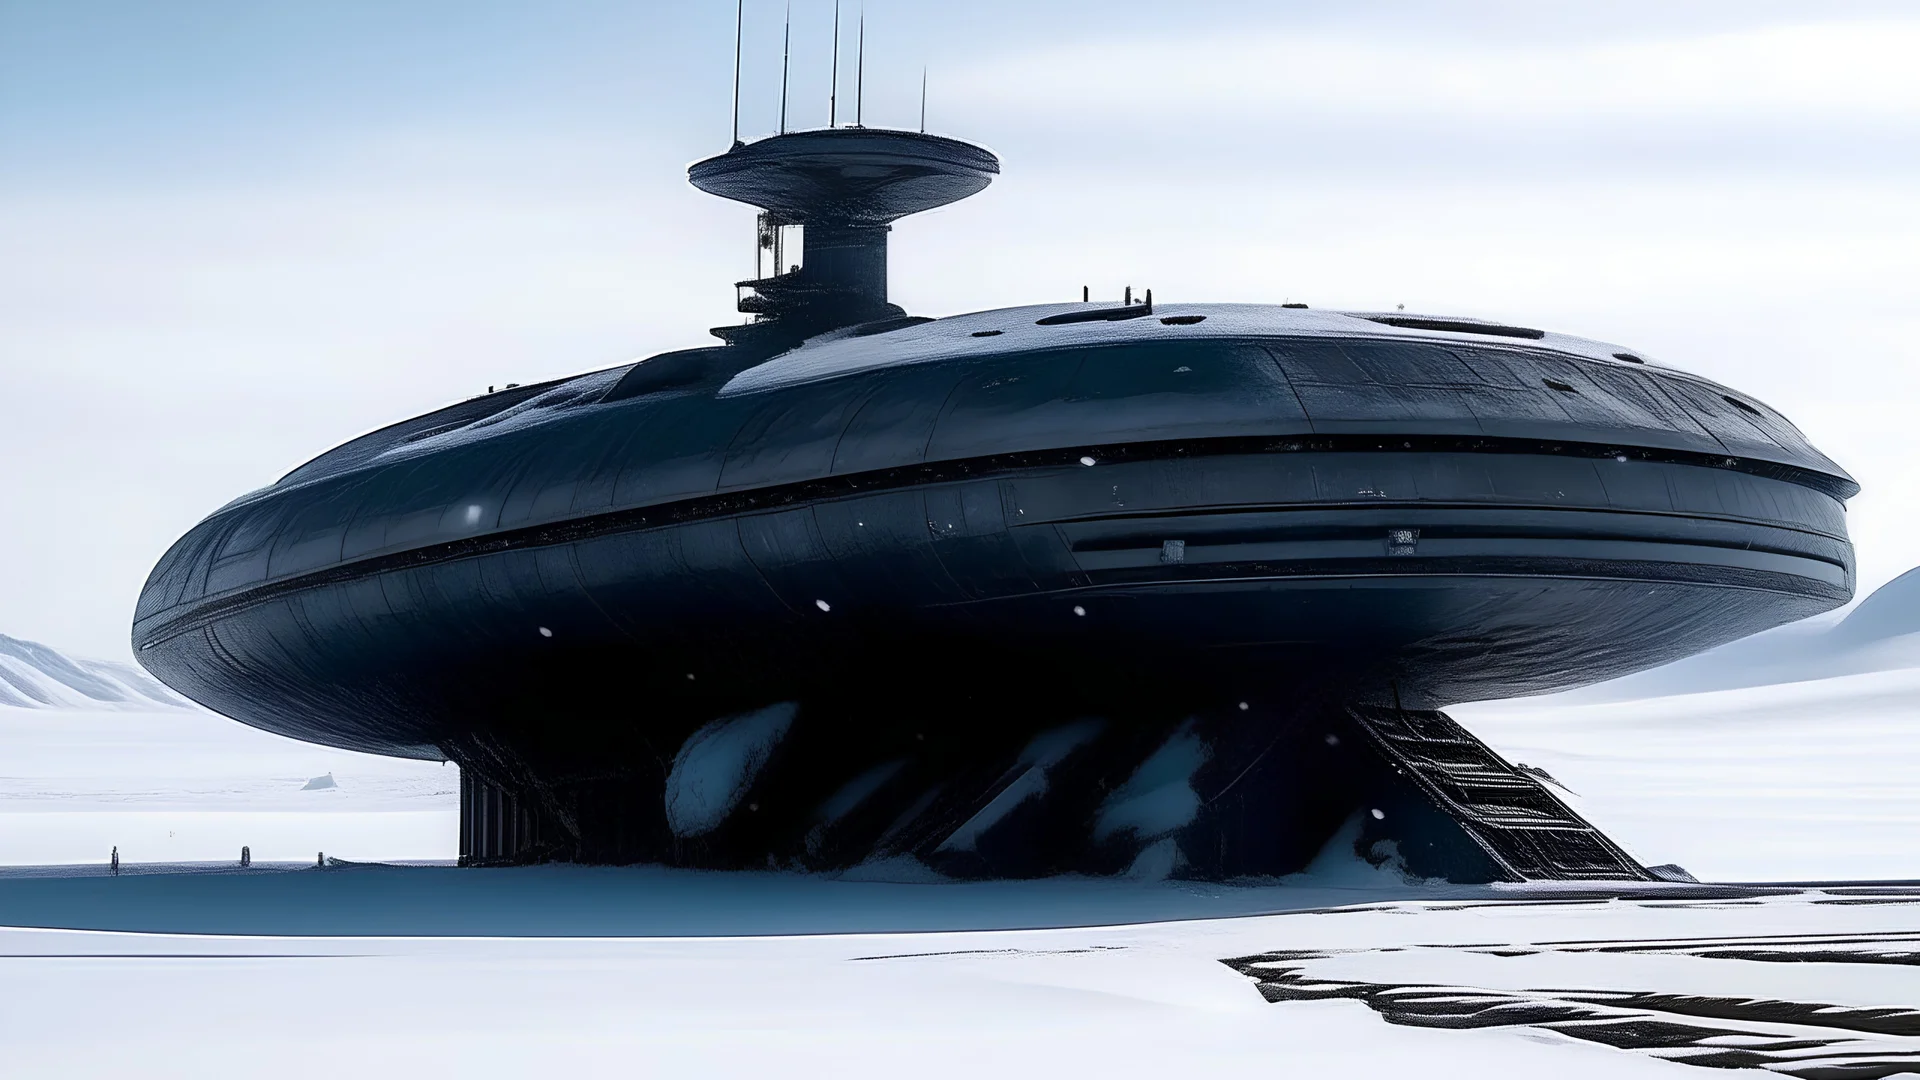 инопланетный корабль полностью находящийся в снегу антарктиды